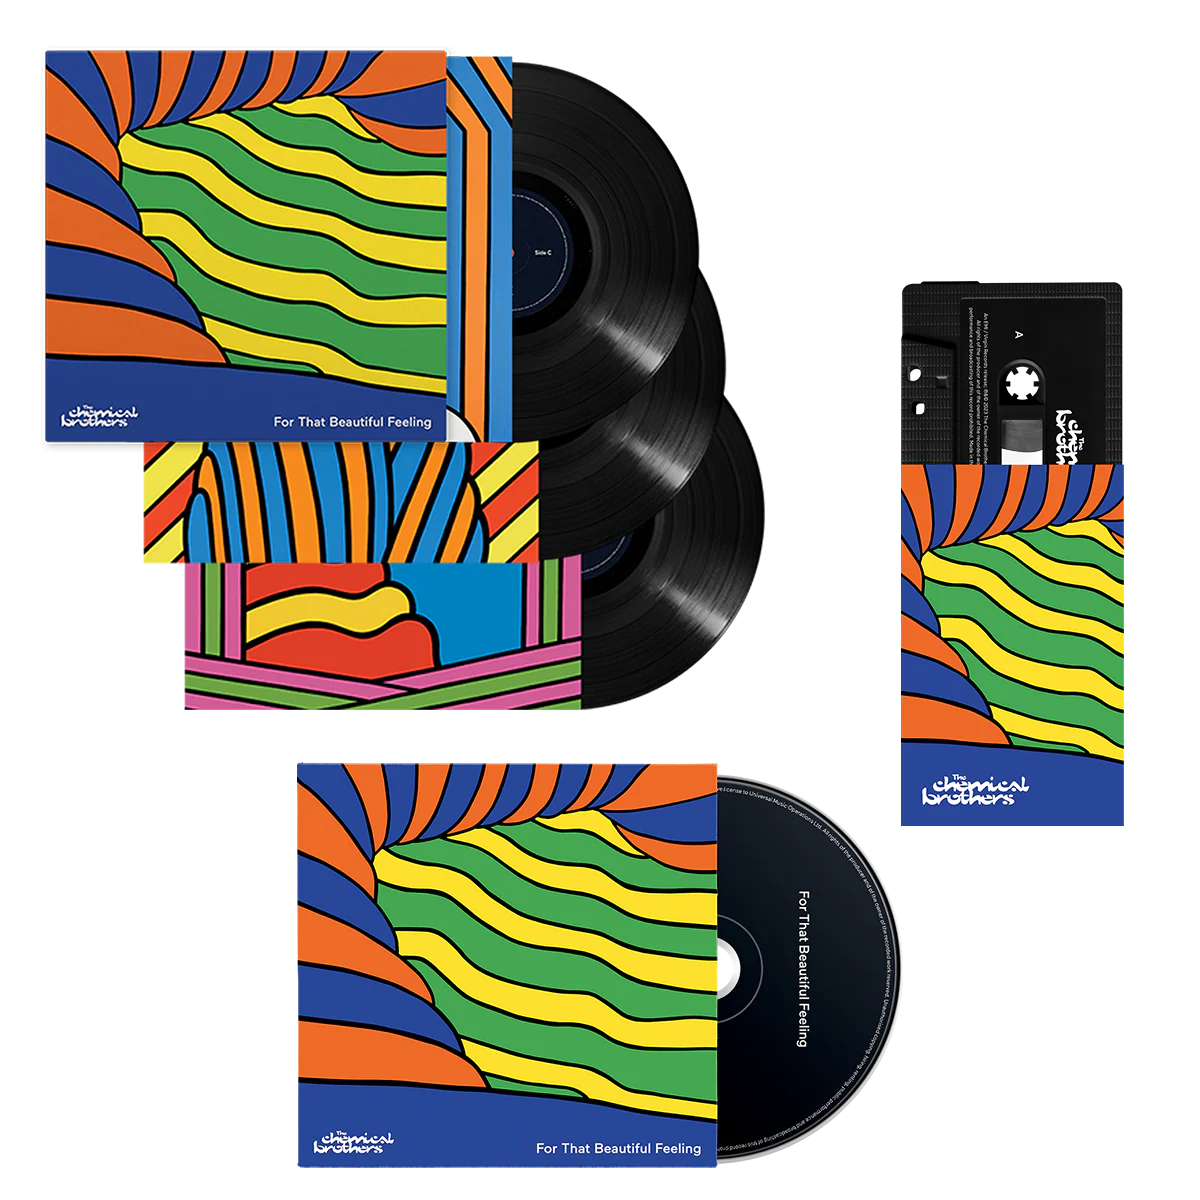 For That Beautiful Feeling: Deluxe Vinyl 3LP, CD + Cassette